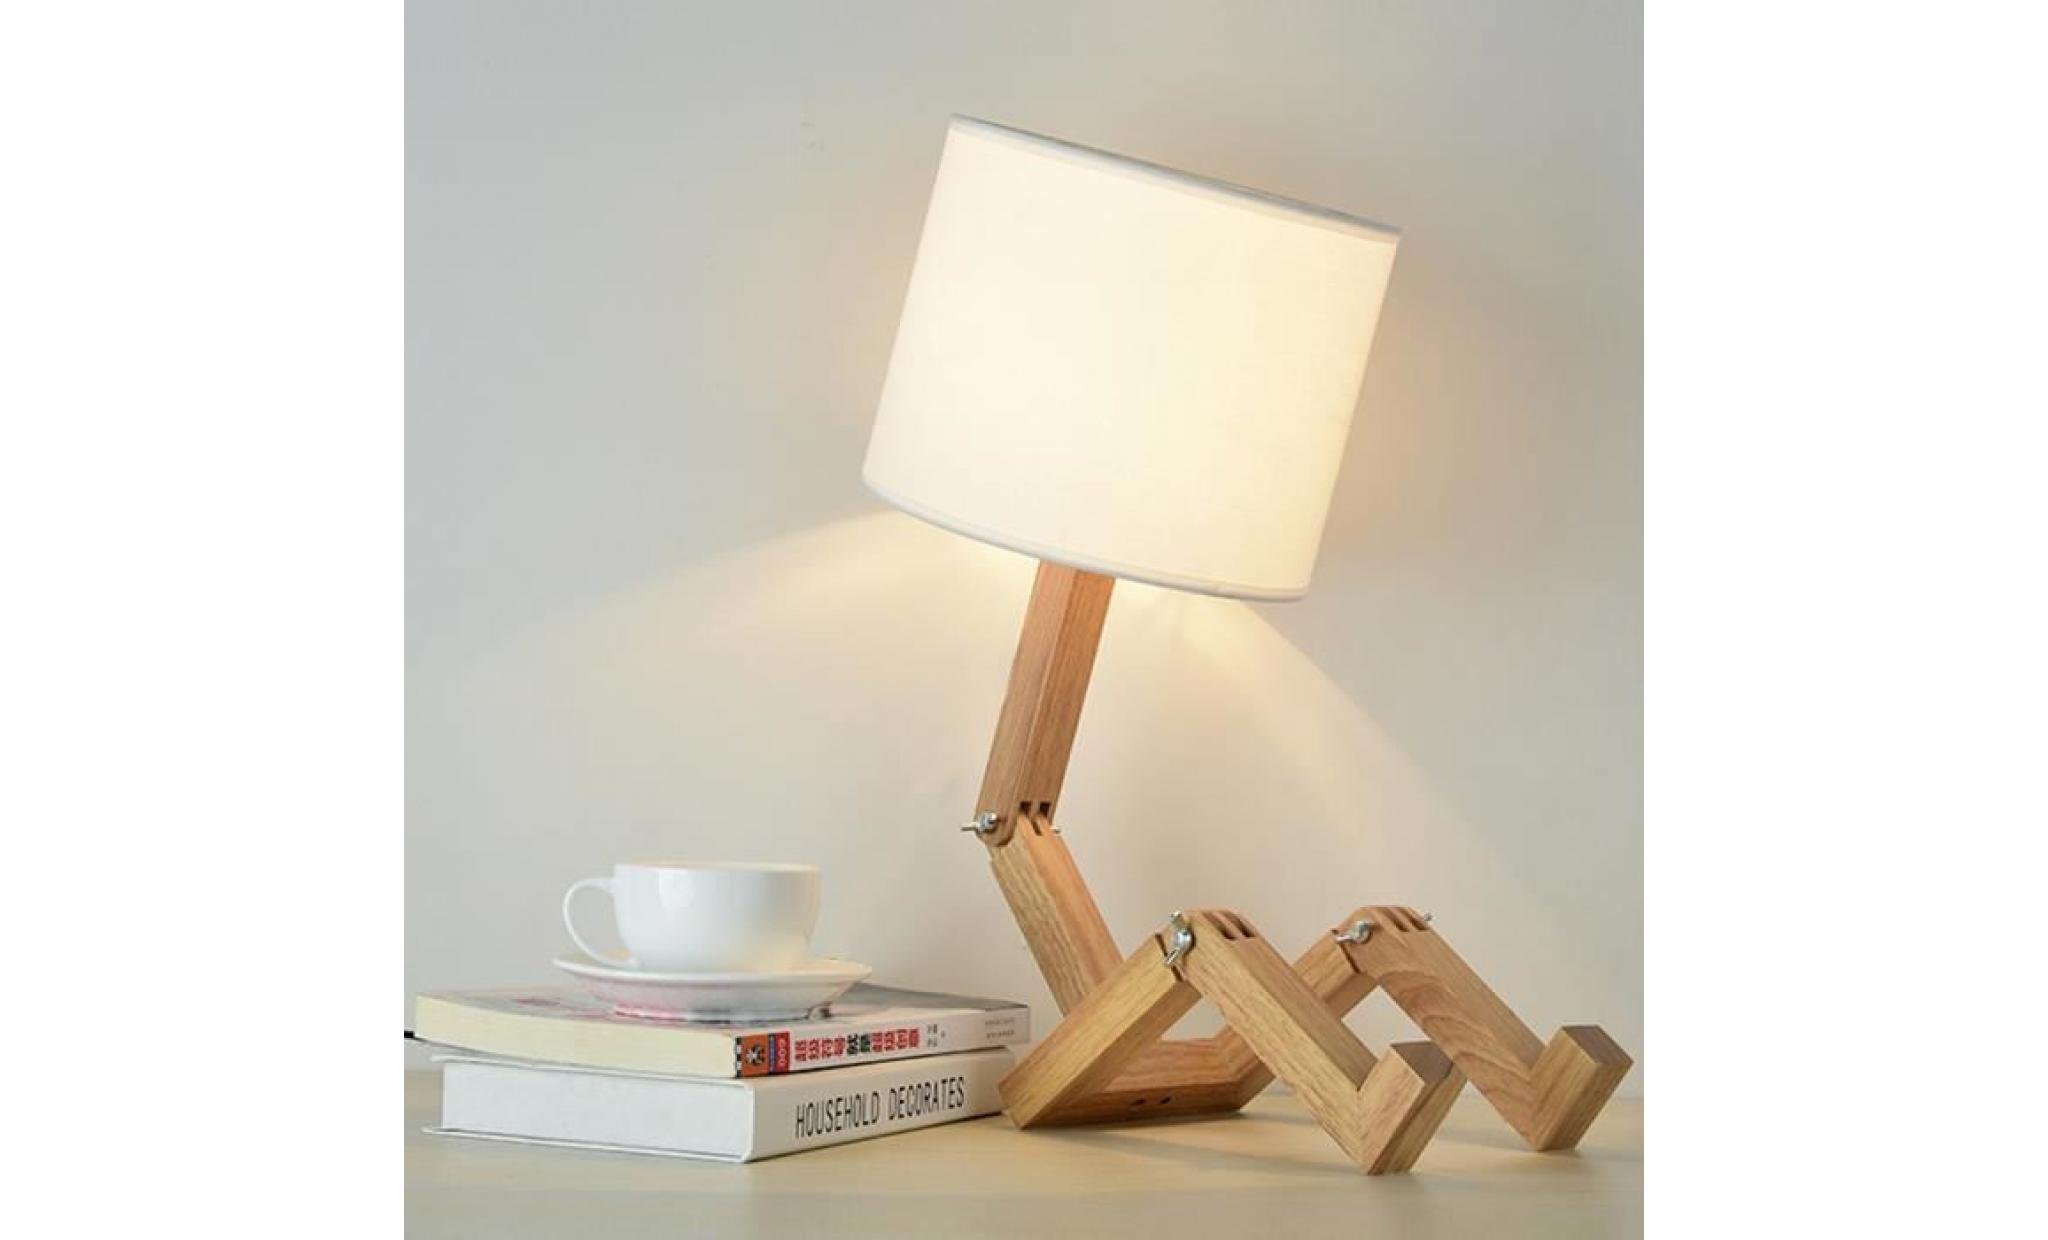 elinkume creative robot lampe de bureau, réglable peut mettre des livres bois lampe de chevet avec tissu abat jour e27 vis pas cher